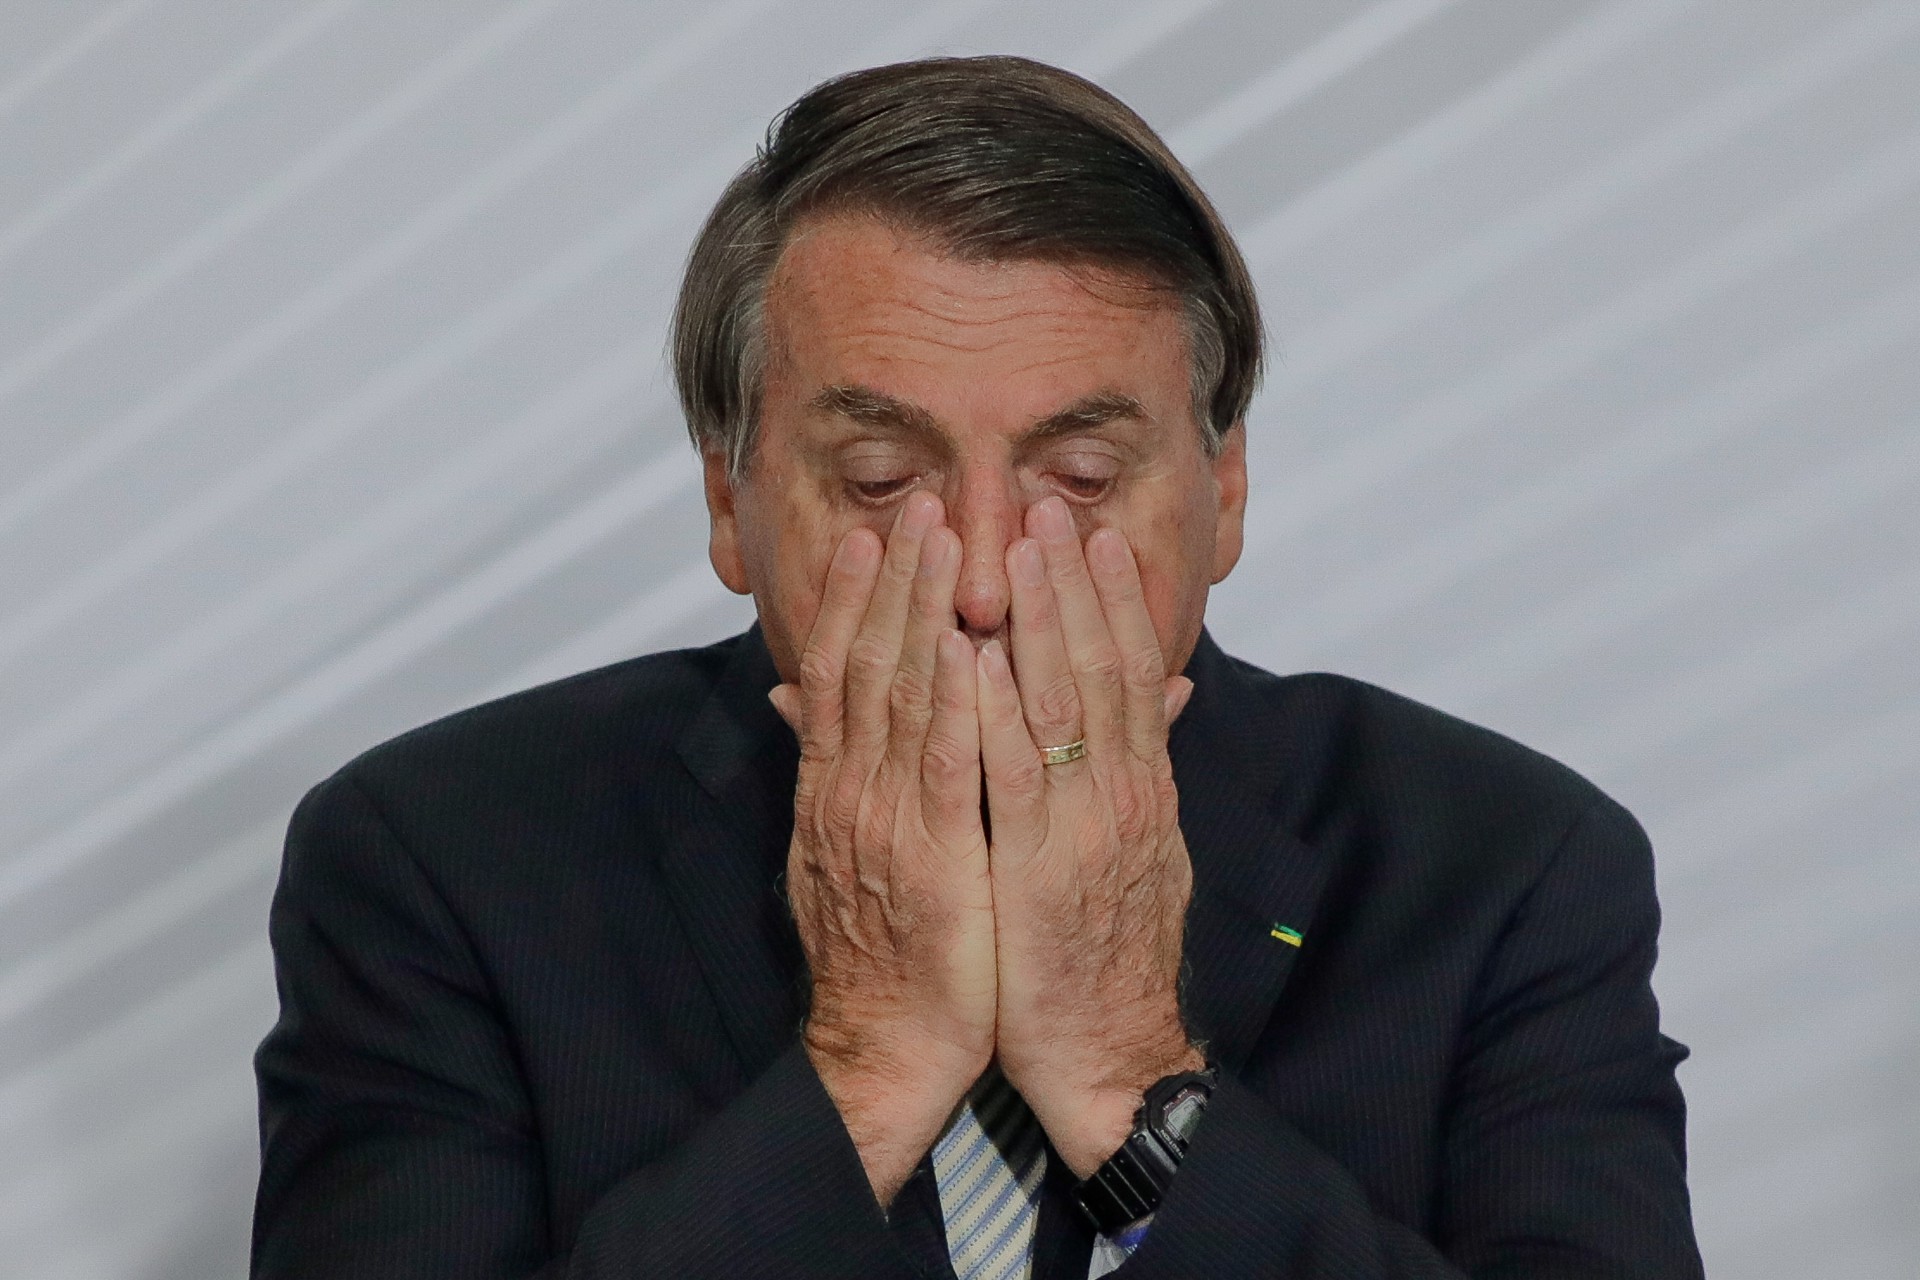 No primeiro dia de trabalho em Brasília, a declaração do presidente Jair Bolsonaro sobre a situação do País causou enorme estrago na imagem e repercutiu por muitos dias. Ele afirmou a apoiadores que o Brasil está 